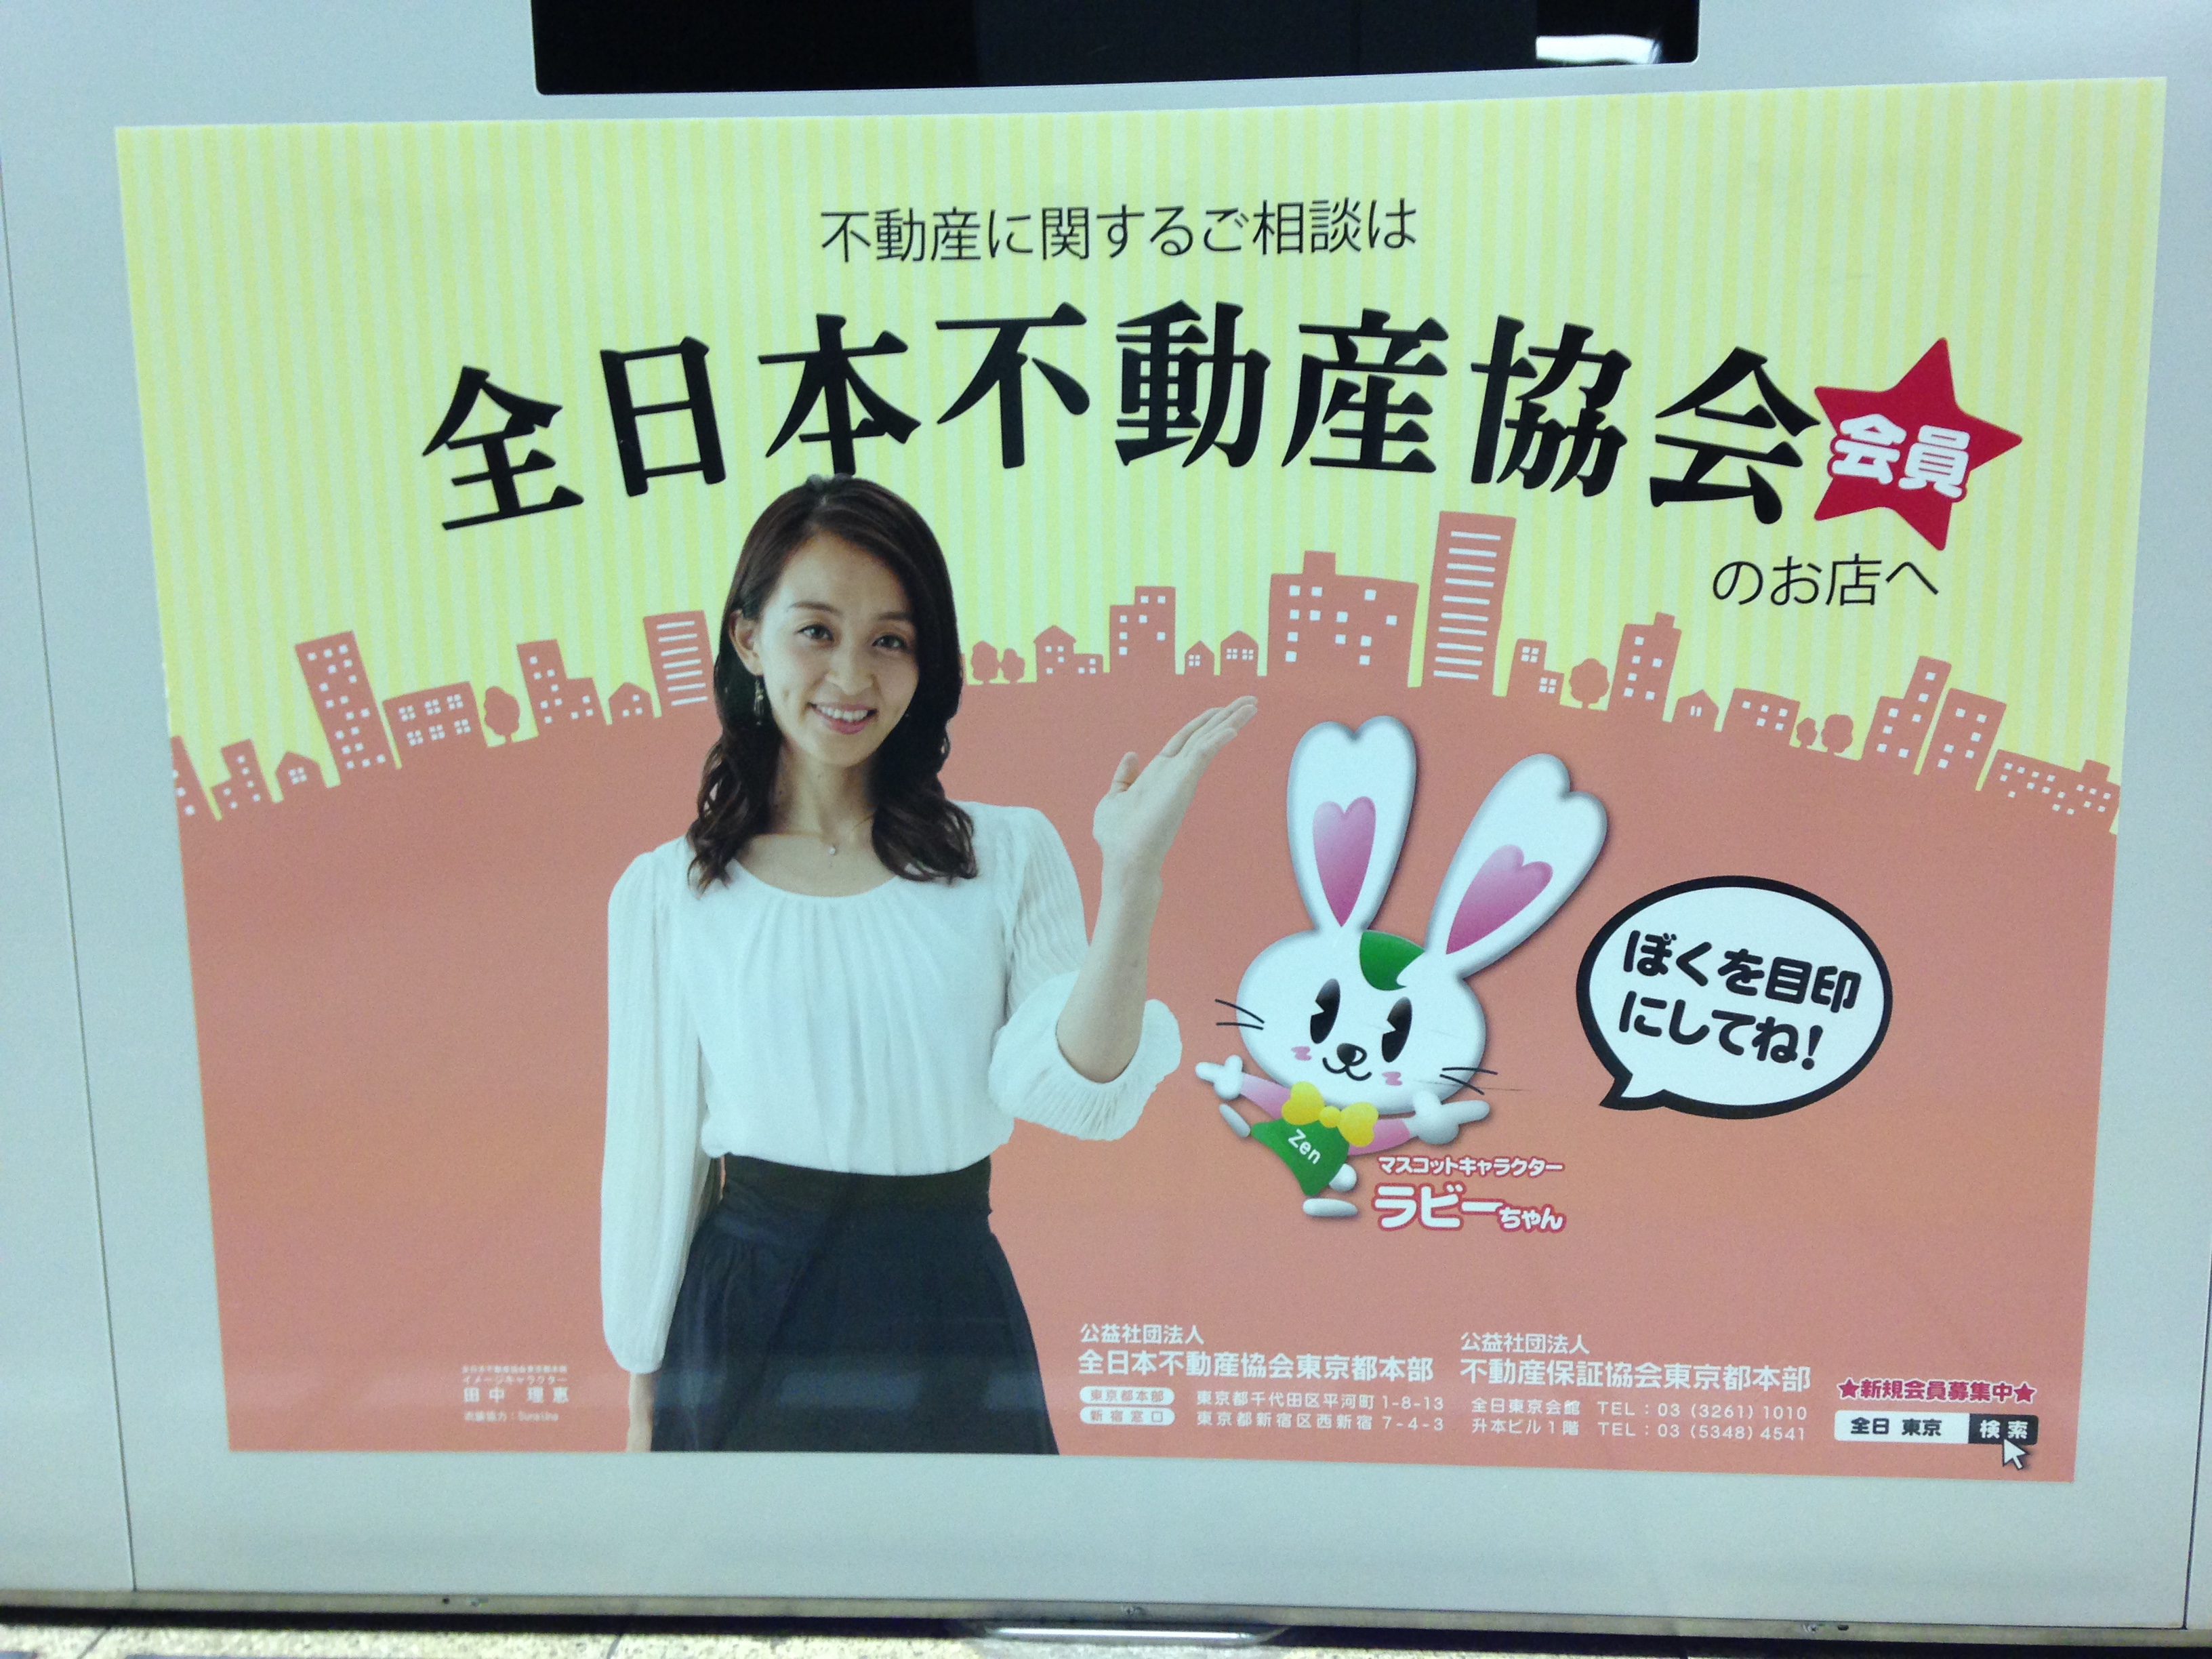 ラビーちゃんと元体操選手の田中理恵さん。大江戸線で見つけた広告